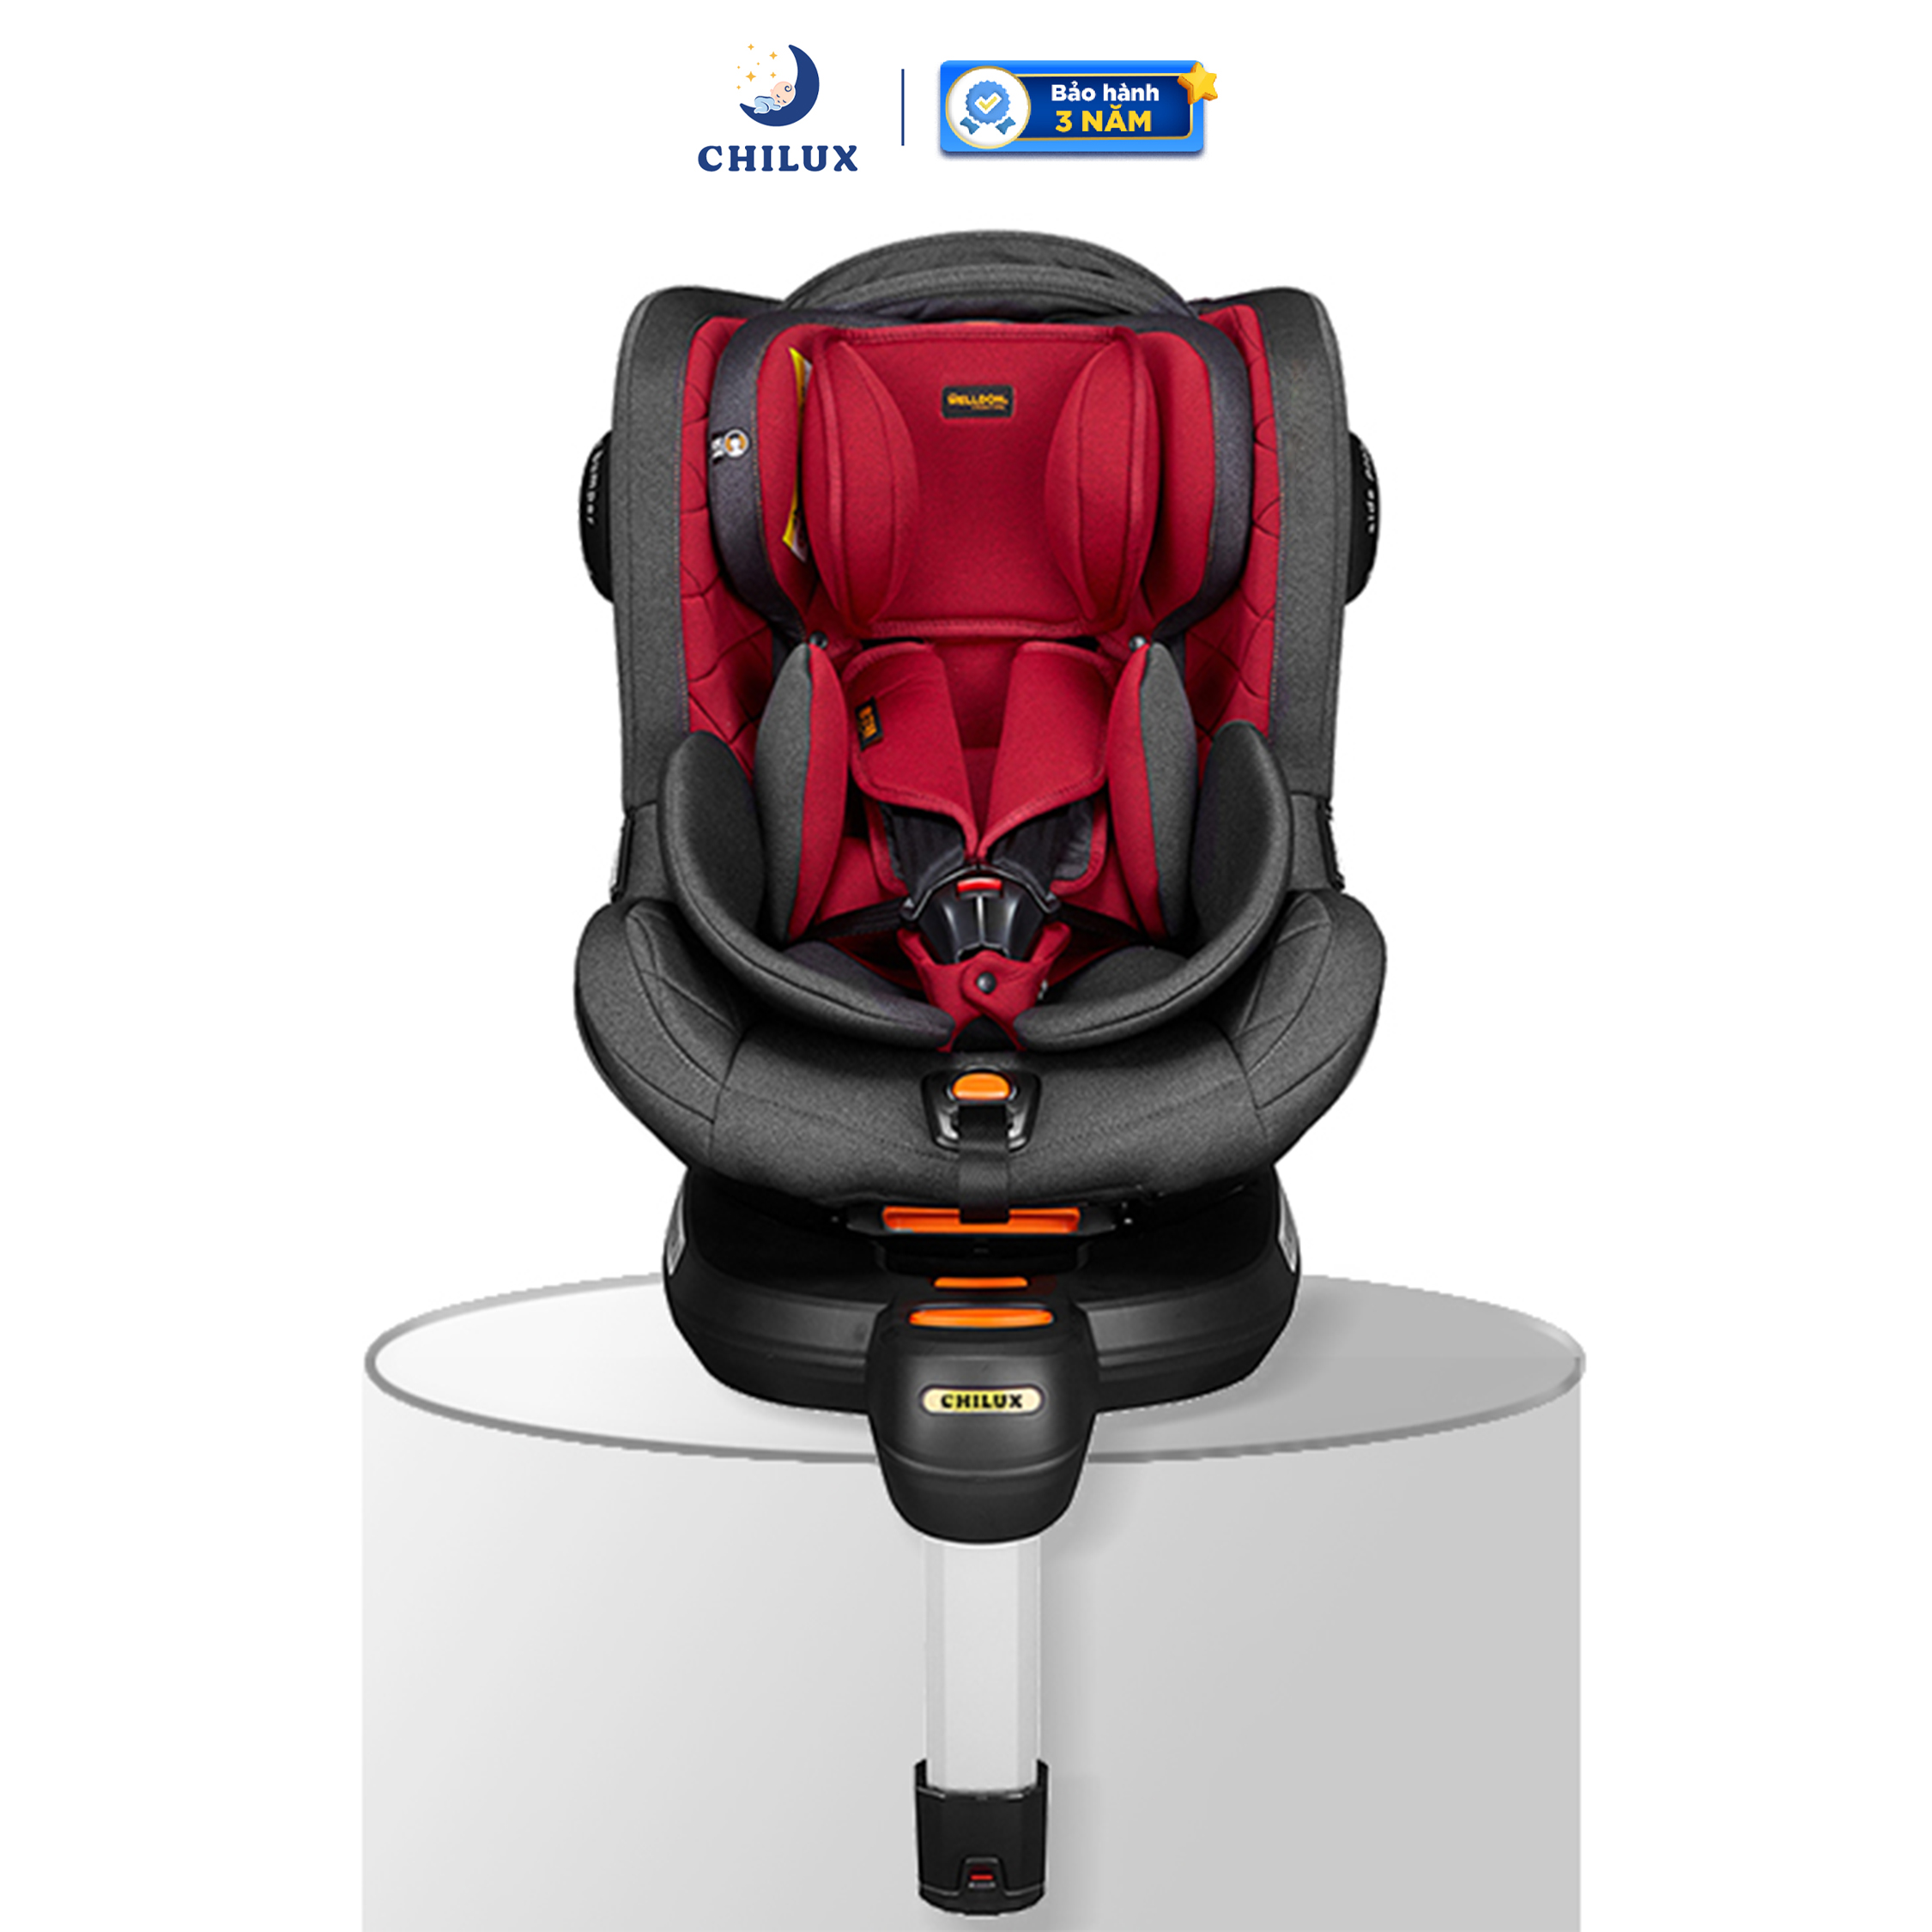 Ghế ngồi ô tô CHILUX SAFE 360 cao cấp cho bé sơ sinh - An toàn